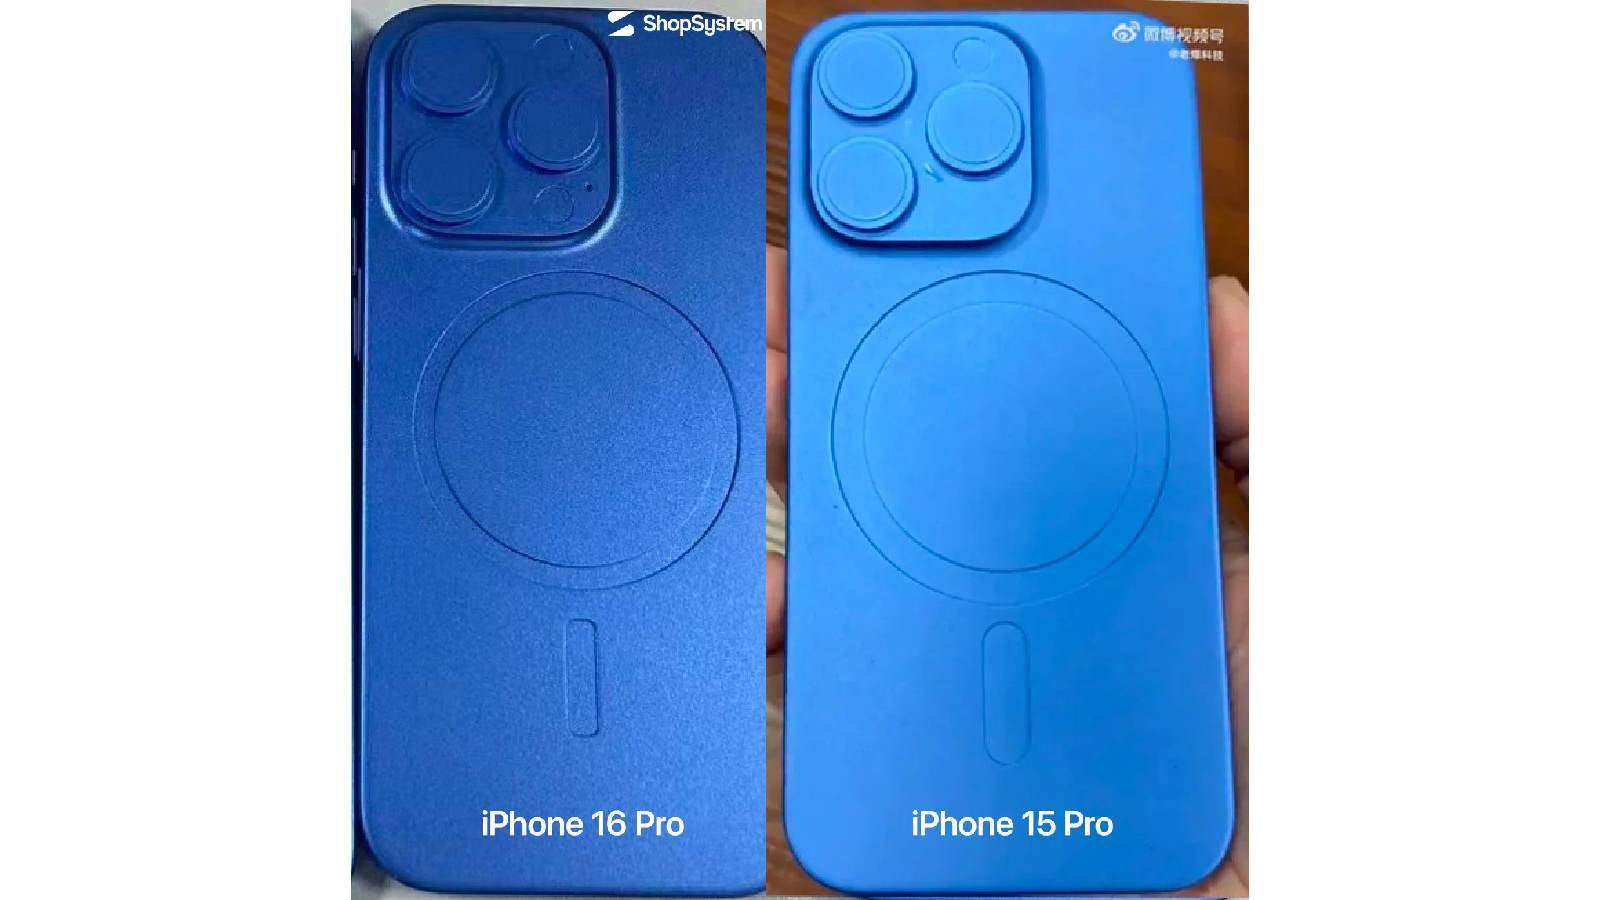 Ảnh khuôn mẫu của iPhone 16 Pro và iPhone 15 Pro.